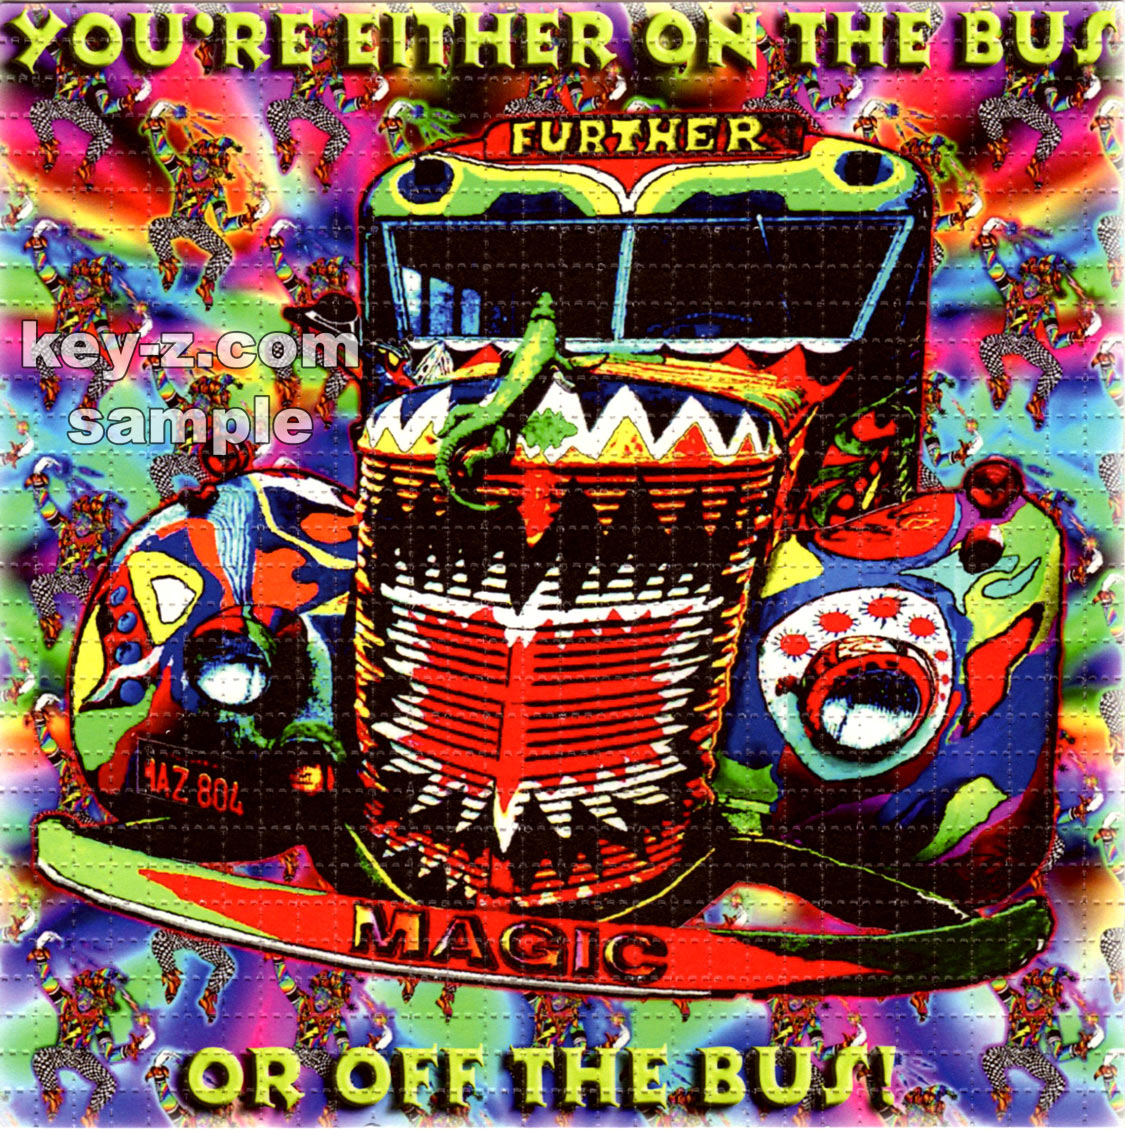 On / Off The Bus LSD blotter art print